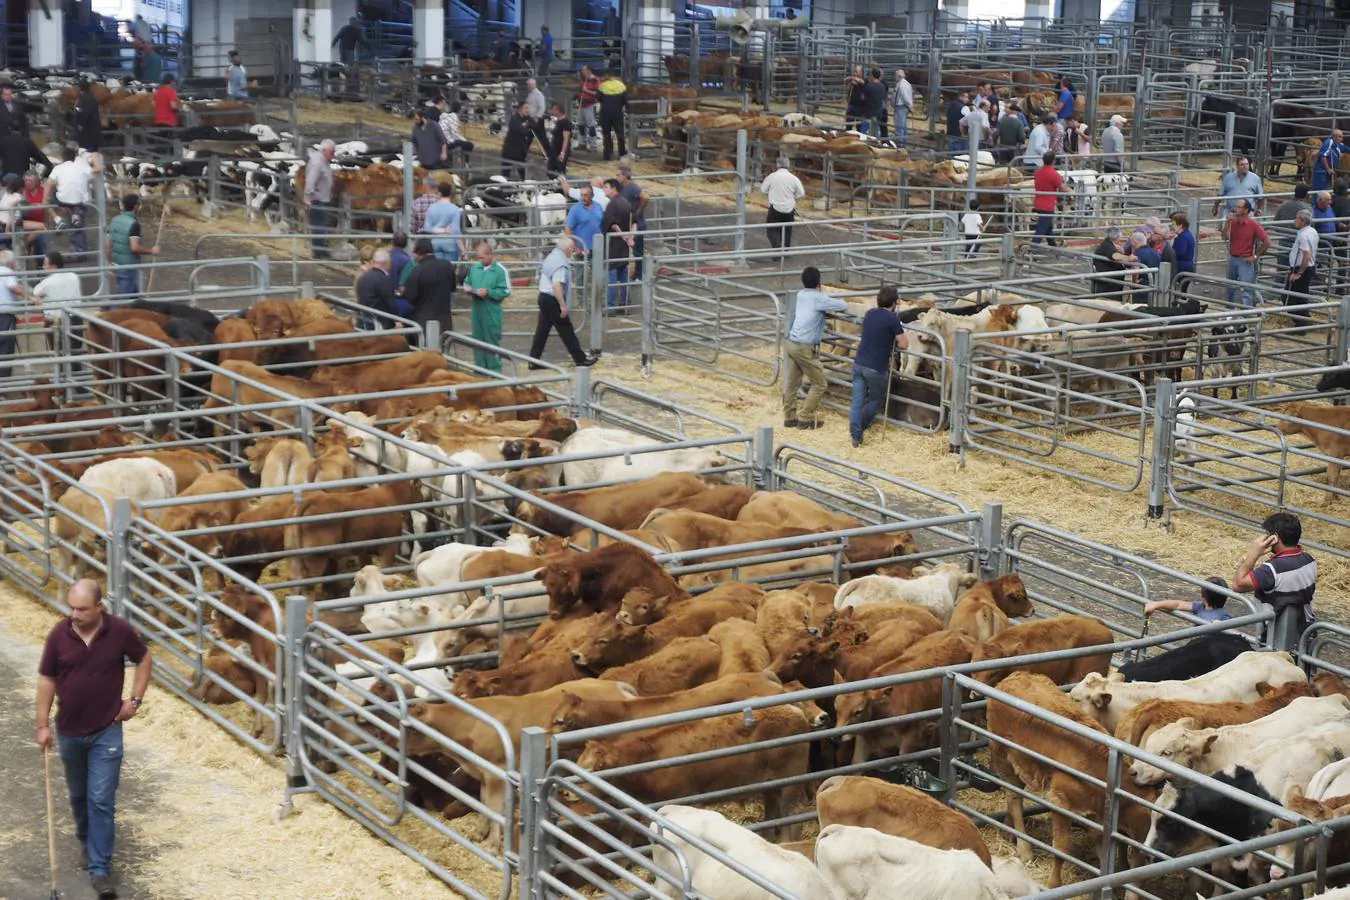 La muestra de ganado ha reducido la oferta pero ha mejorado los precios de la leche